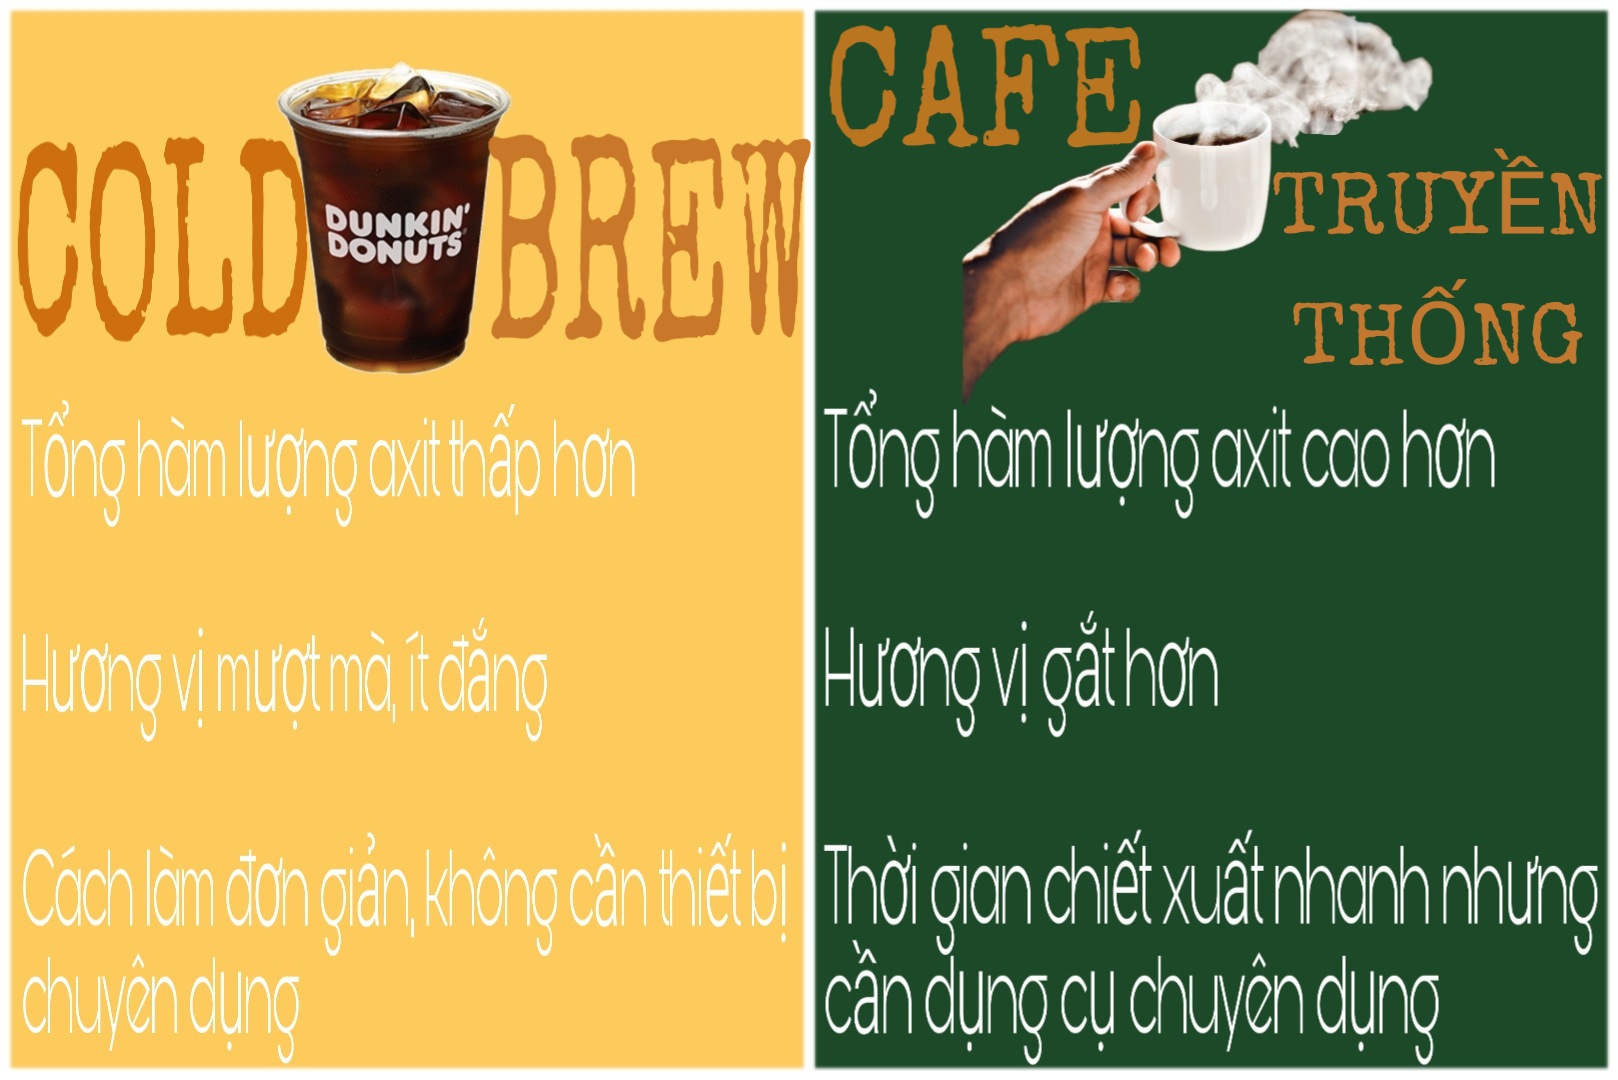 Lý do bạn nên chọn Cold Brew thay vì cà phê được pha theo cách truyền thống